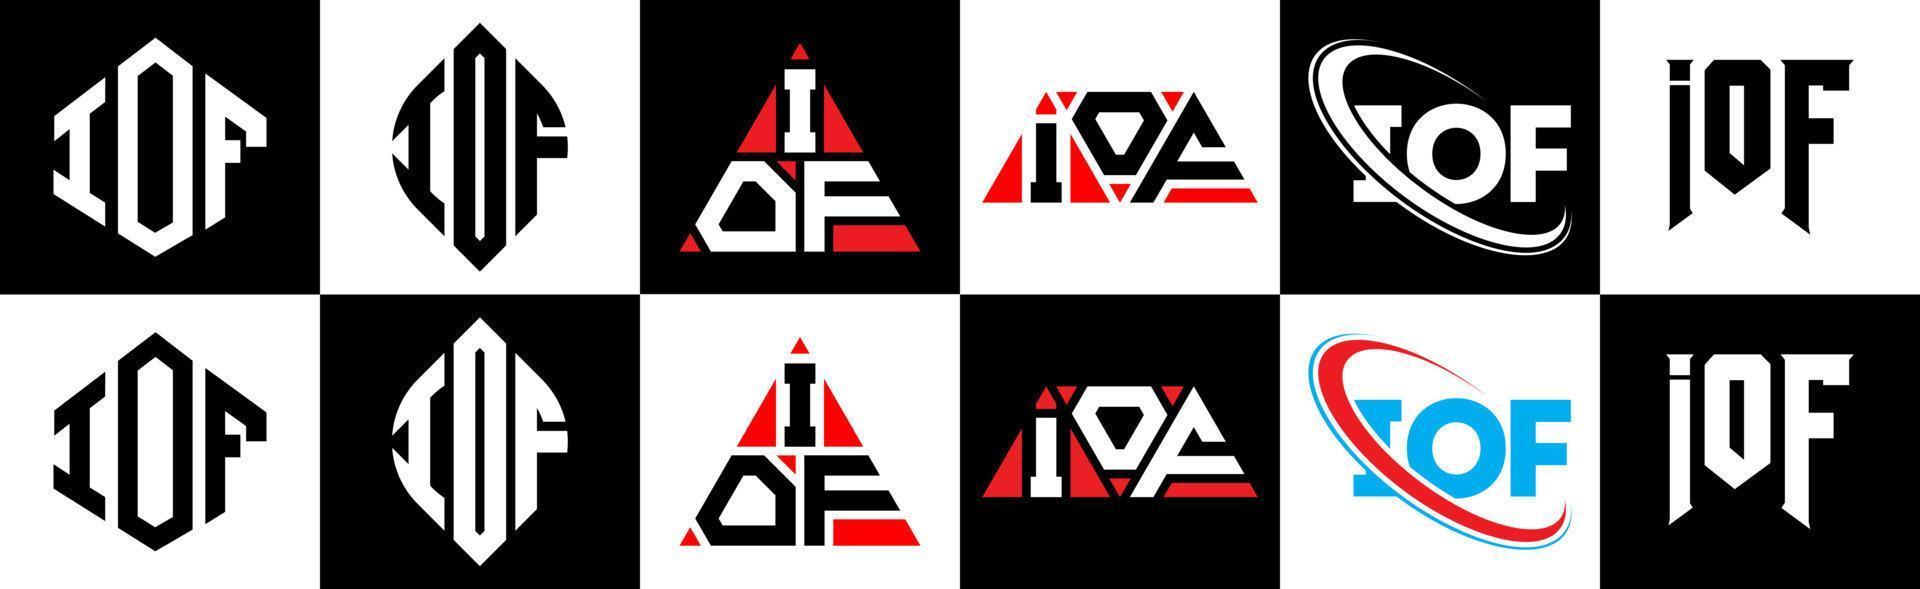 iof-Buchstaben-Logo-Design in sechs Stilen. Iof-Polygon, Kreis, Dreieck, Sechseck, flacher und einfacher Stil mit schwarzem und weißem Farbvariations-Buchstabenlogo in einer Zeichenfläche. Iof minimalistisches und klassisches Logo vektor